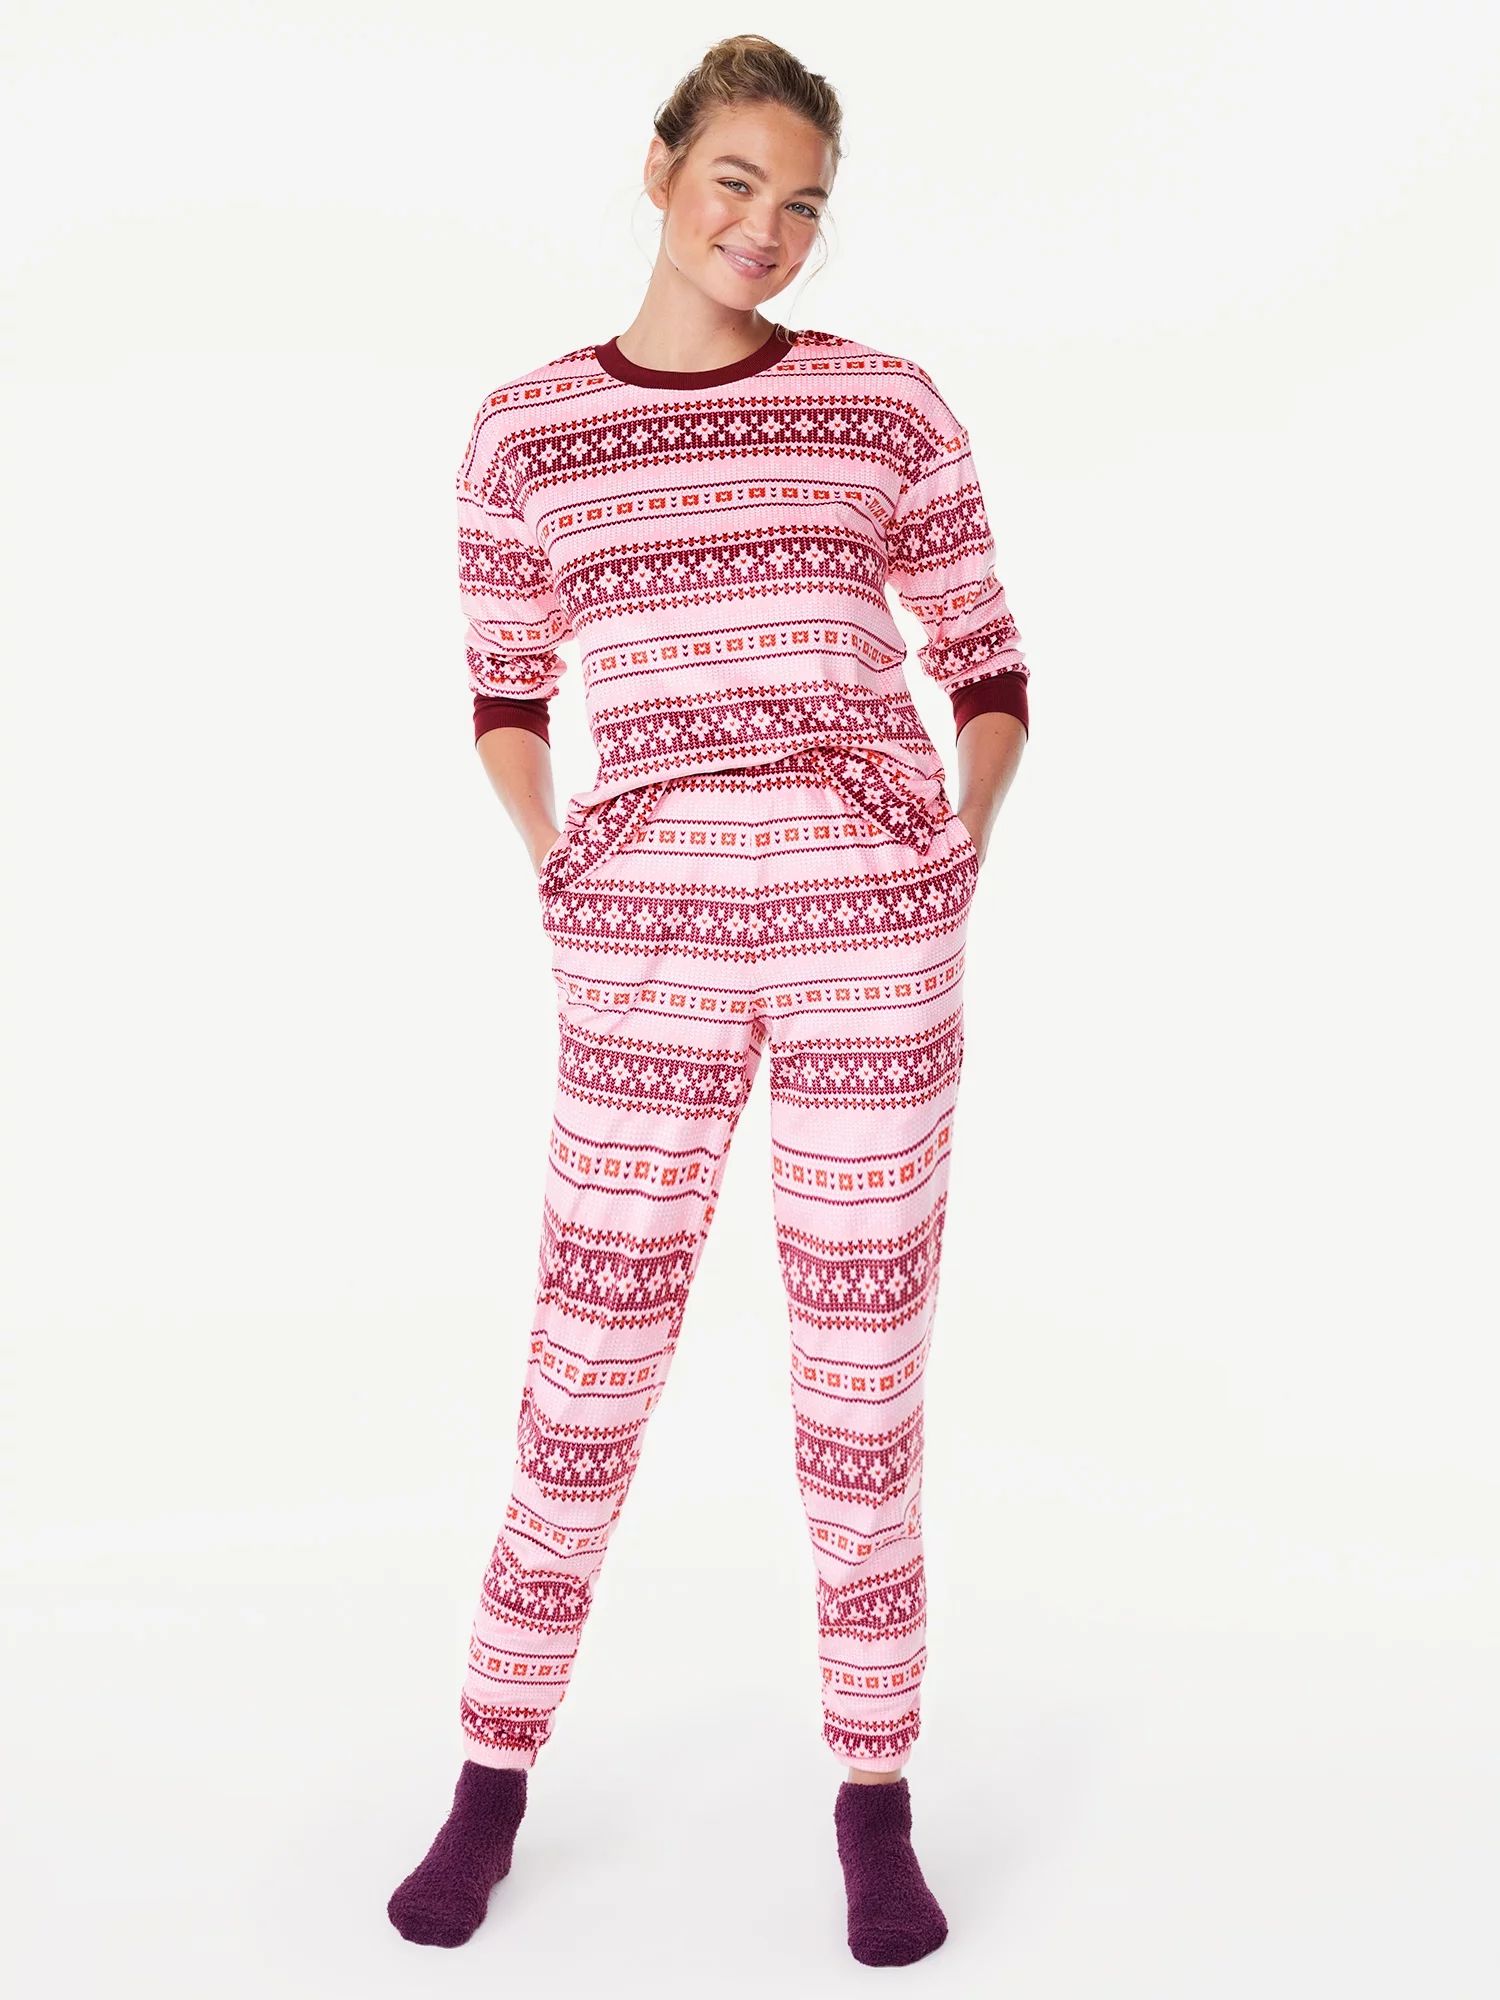 Joyspun Women's Stretch Velour Top and Pants Pajama Set with Socks, 3-Piece, Sizes S to 3X - Walm... | Walmart (US)